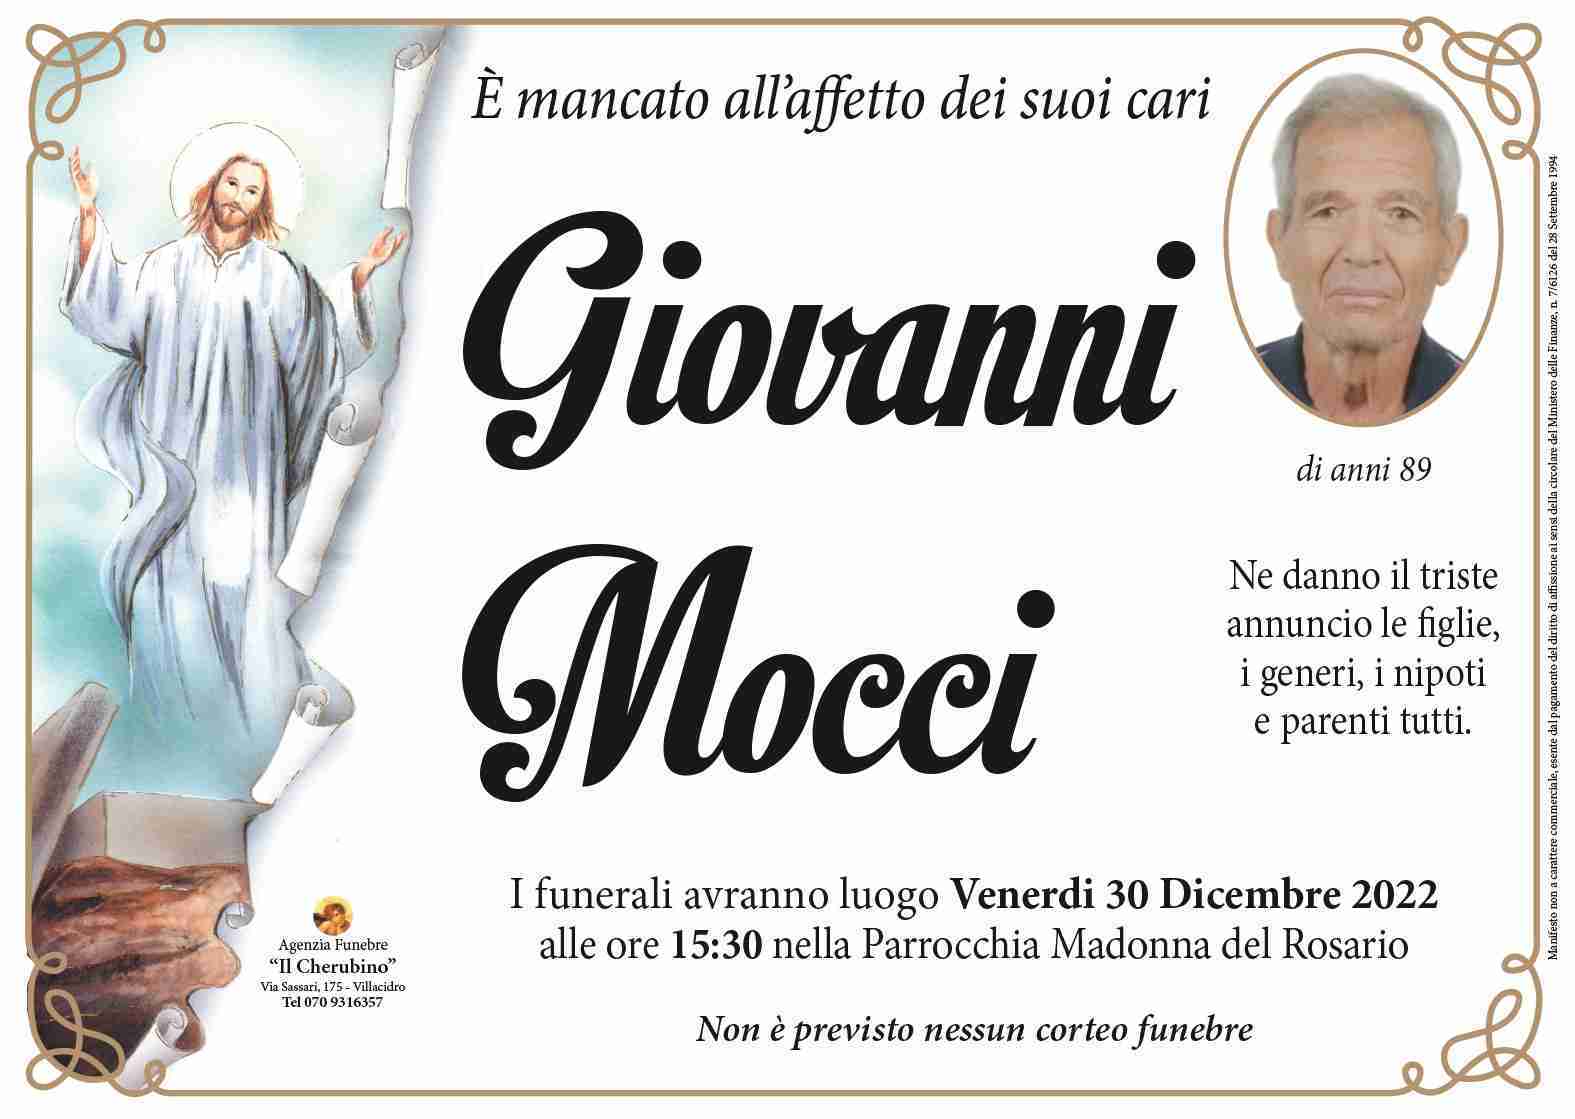 Mocci Giovanni